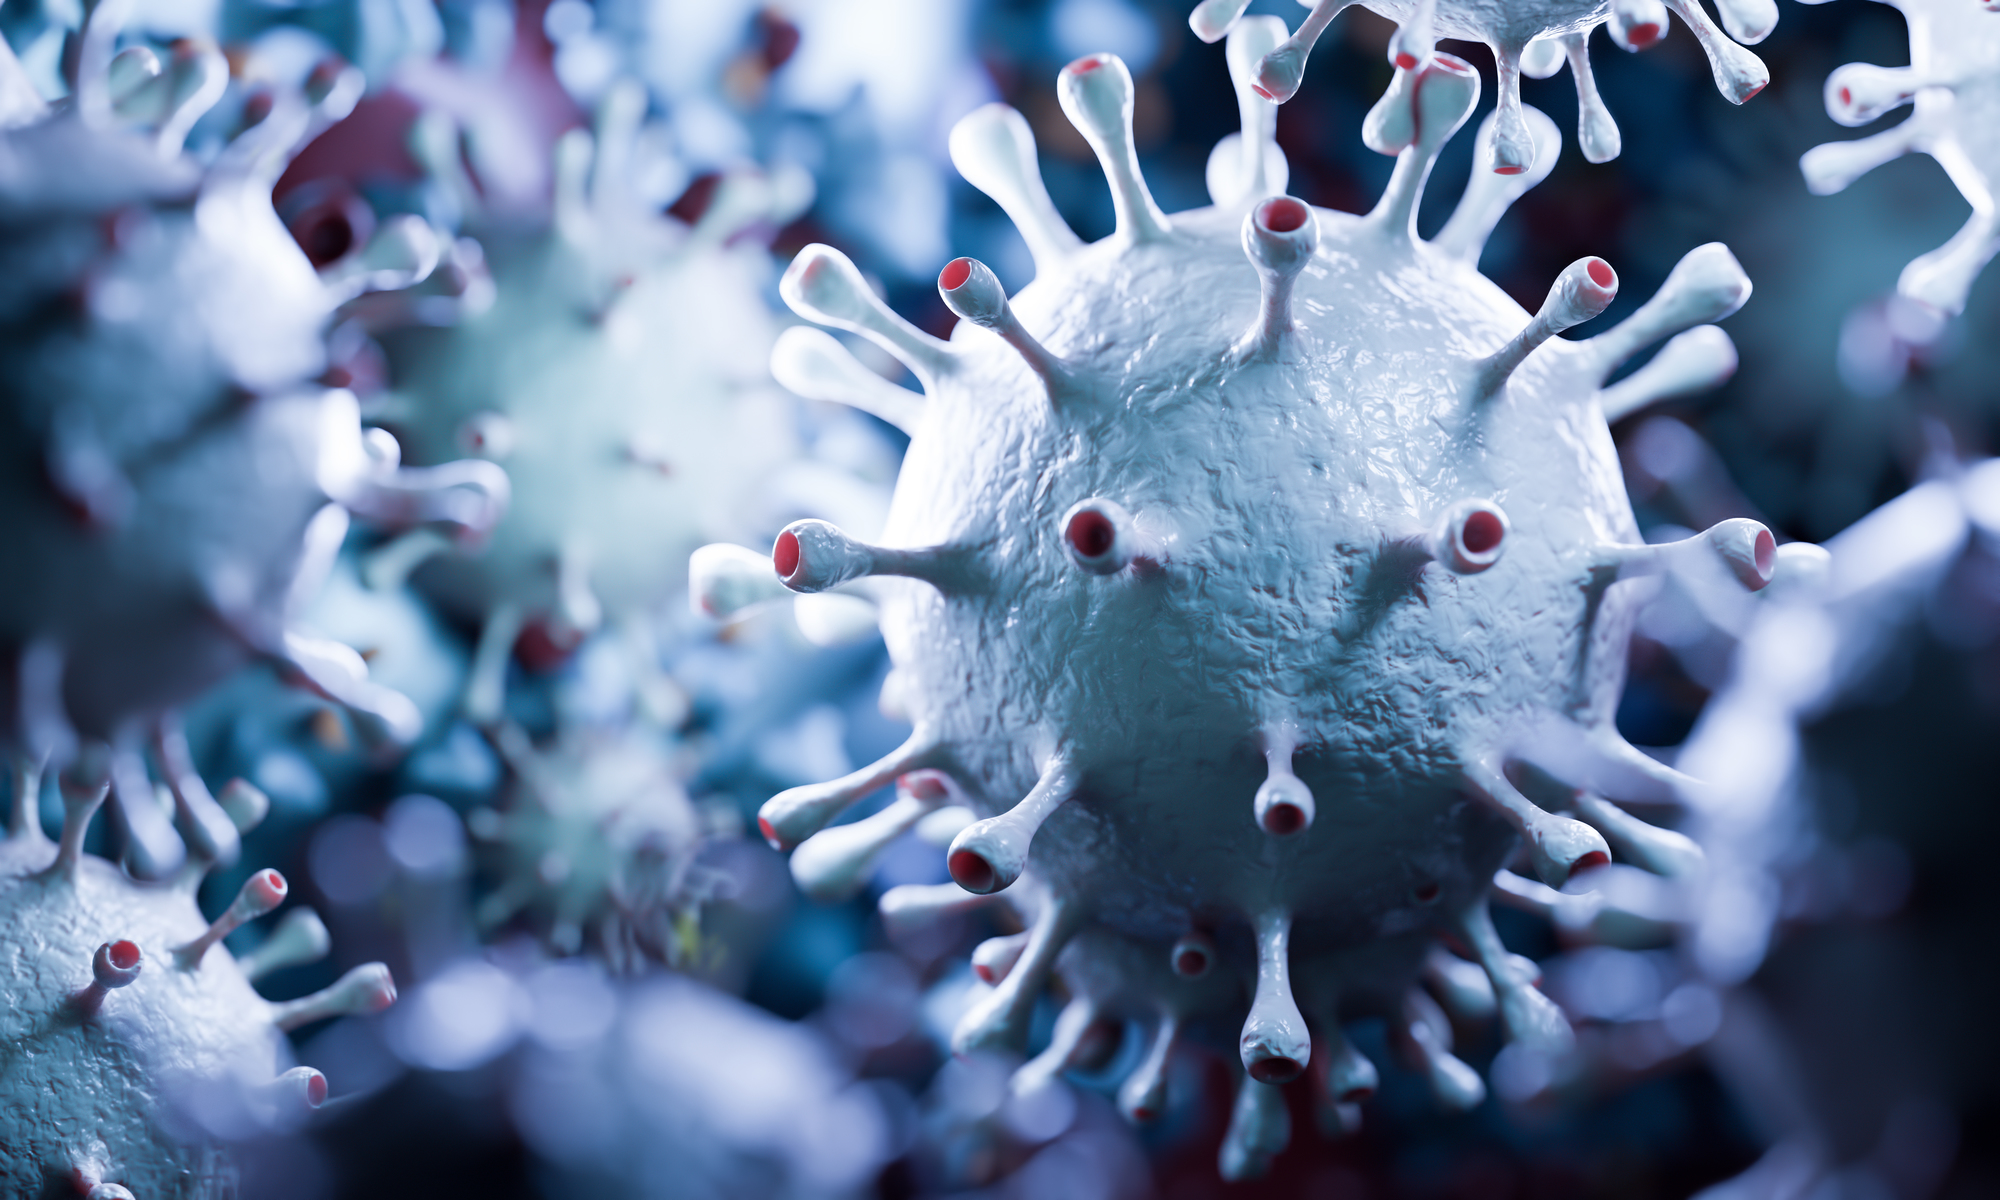 coronavirus-cells-in-microscopic-view-virus-HC7EQET.jpg